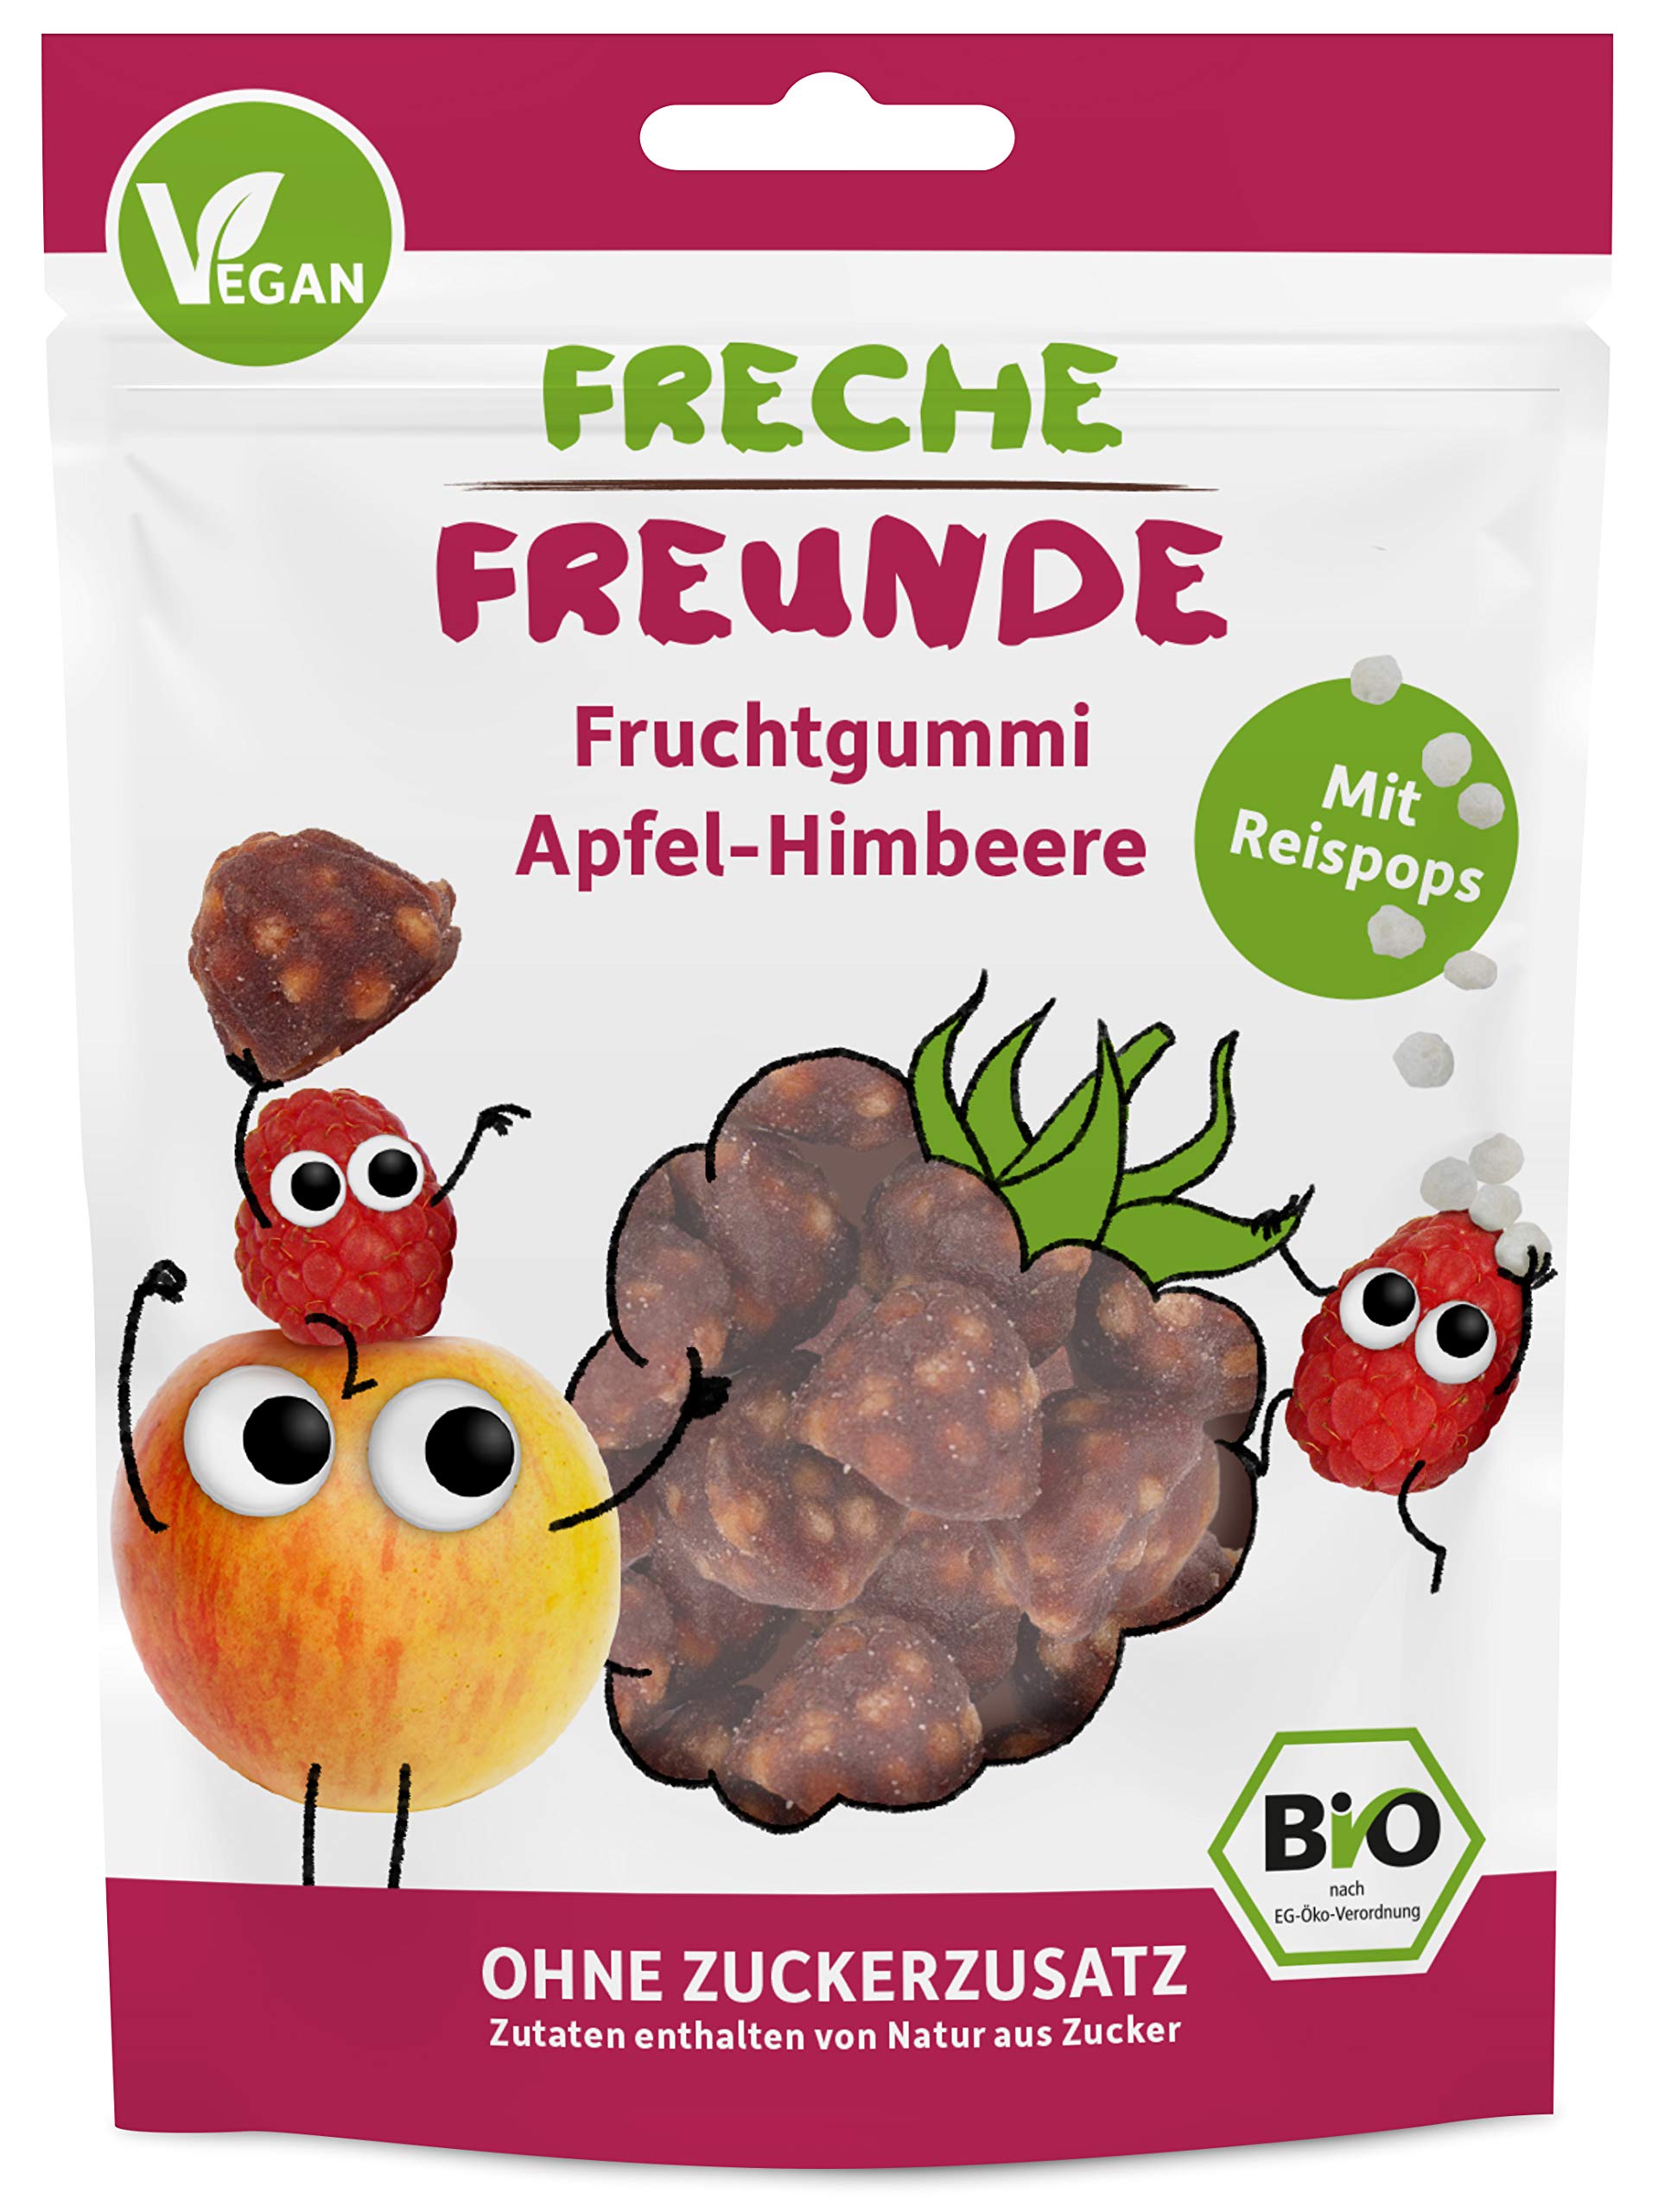 FRECHE FREUNDE Bio Fruchtgummi Apfel-Himbeere mit Reispops, Bio Frucht Snack für Kinder, glutenfrei, vegan, 20er Pack (20 x 30g)